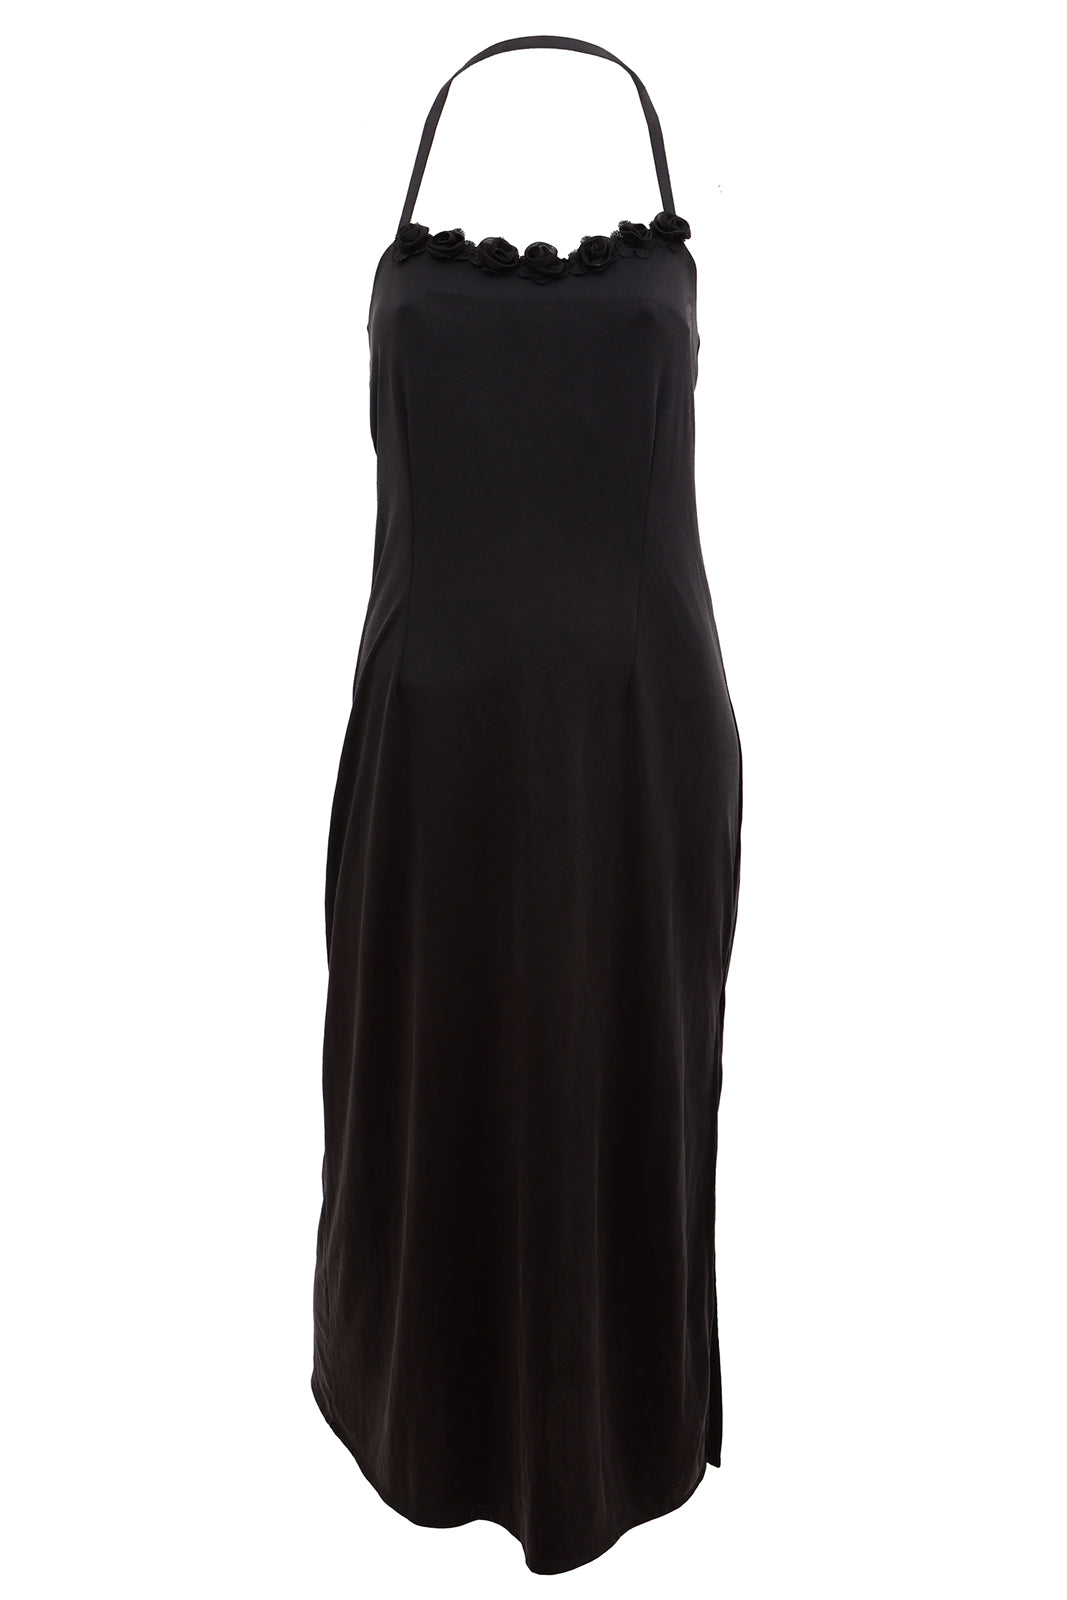 Μαύρο εξώπλατο φόρεμα - MONICA Dress